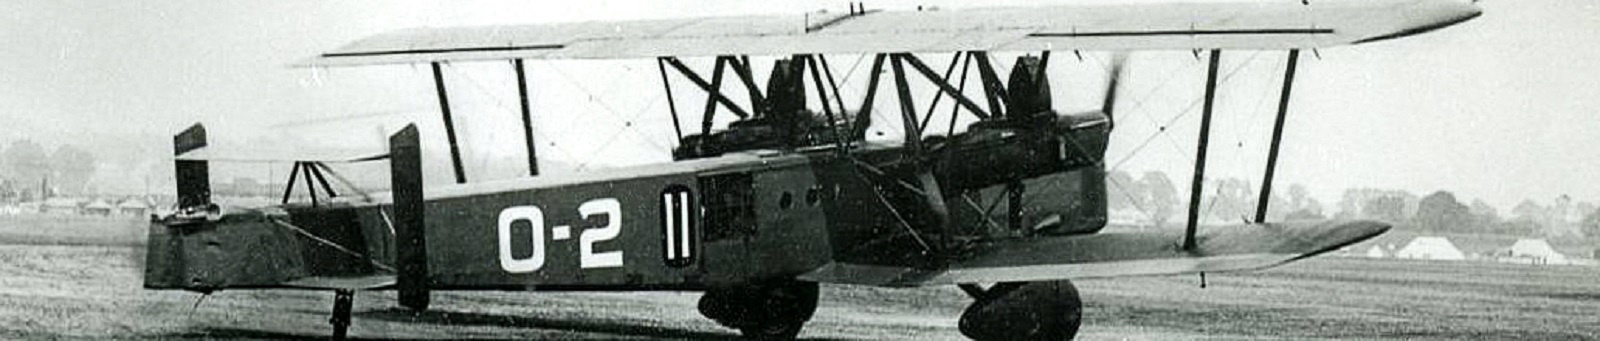 Vickers Type 163